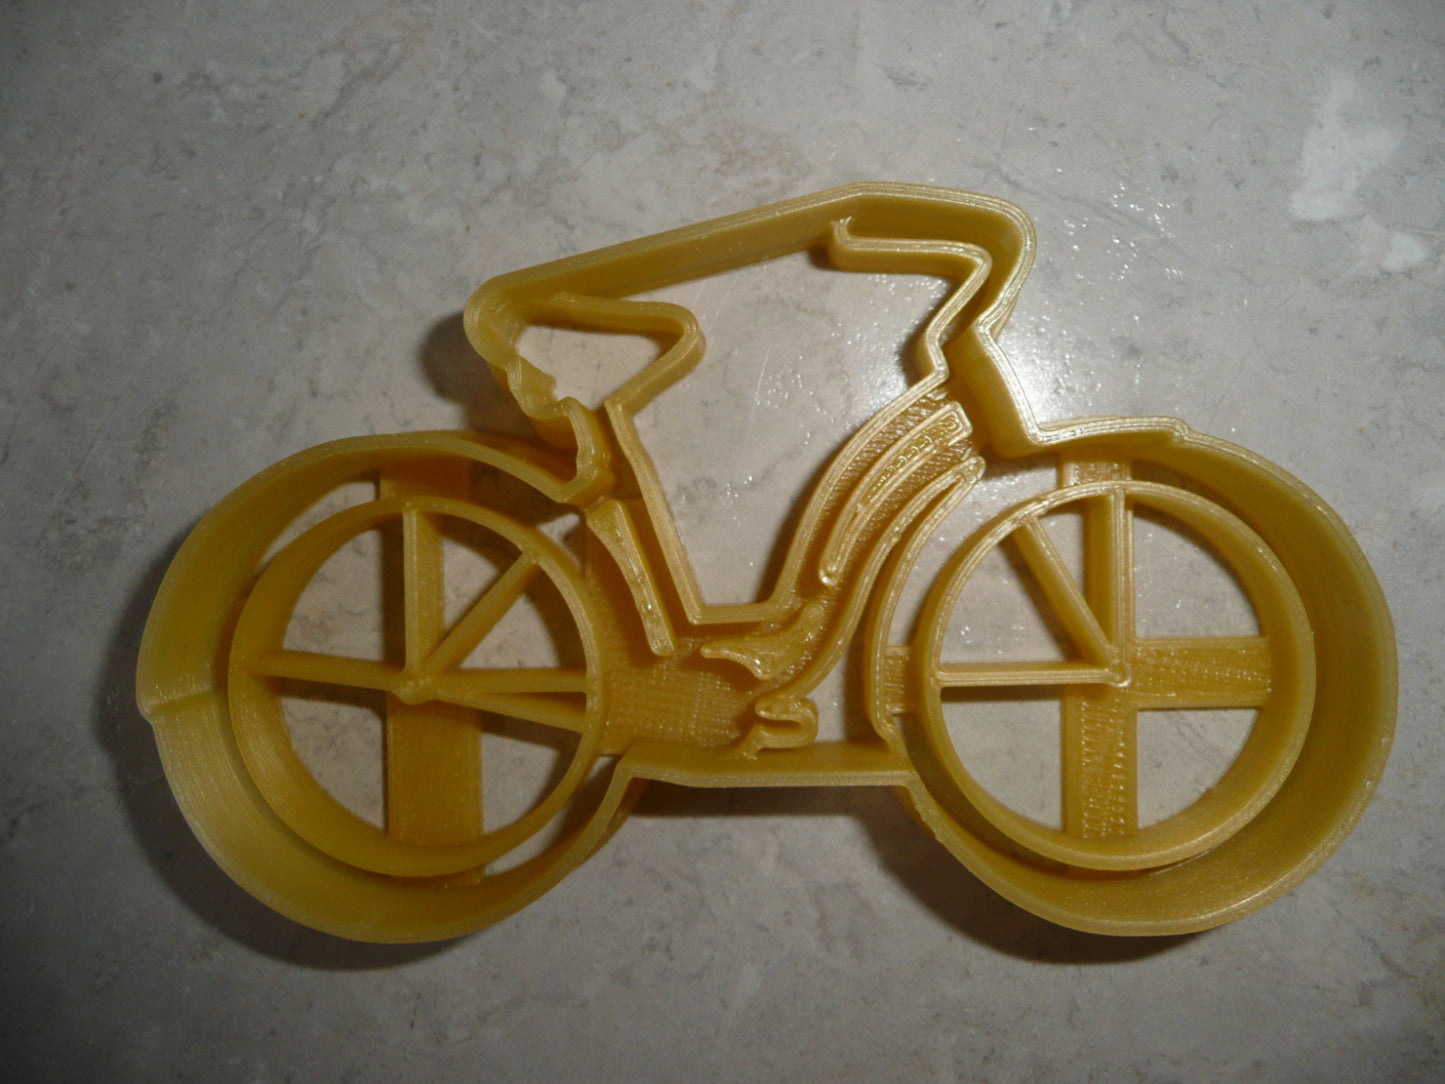 6x Vintage Cruiser Bike Fondant Cutter Cupcake Topper 1.75 IN USA FD4916